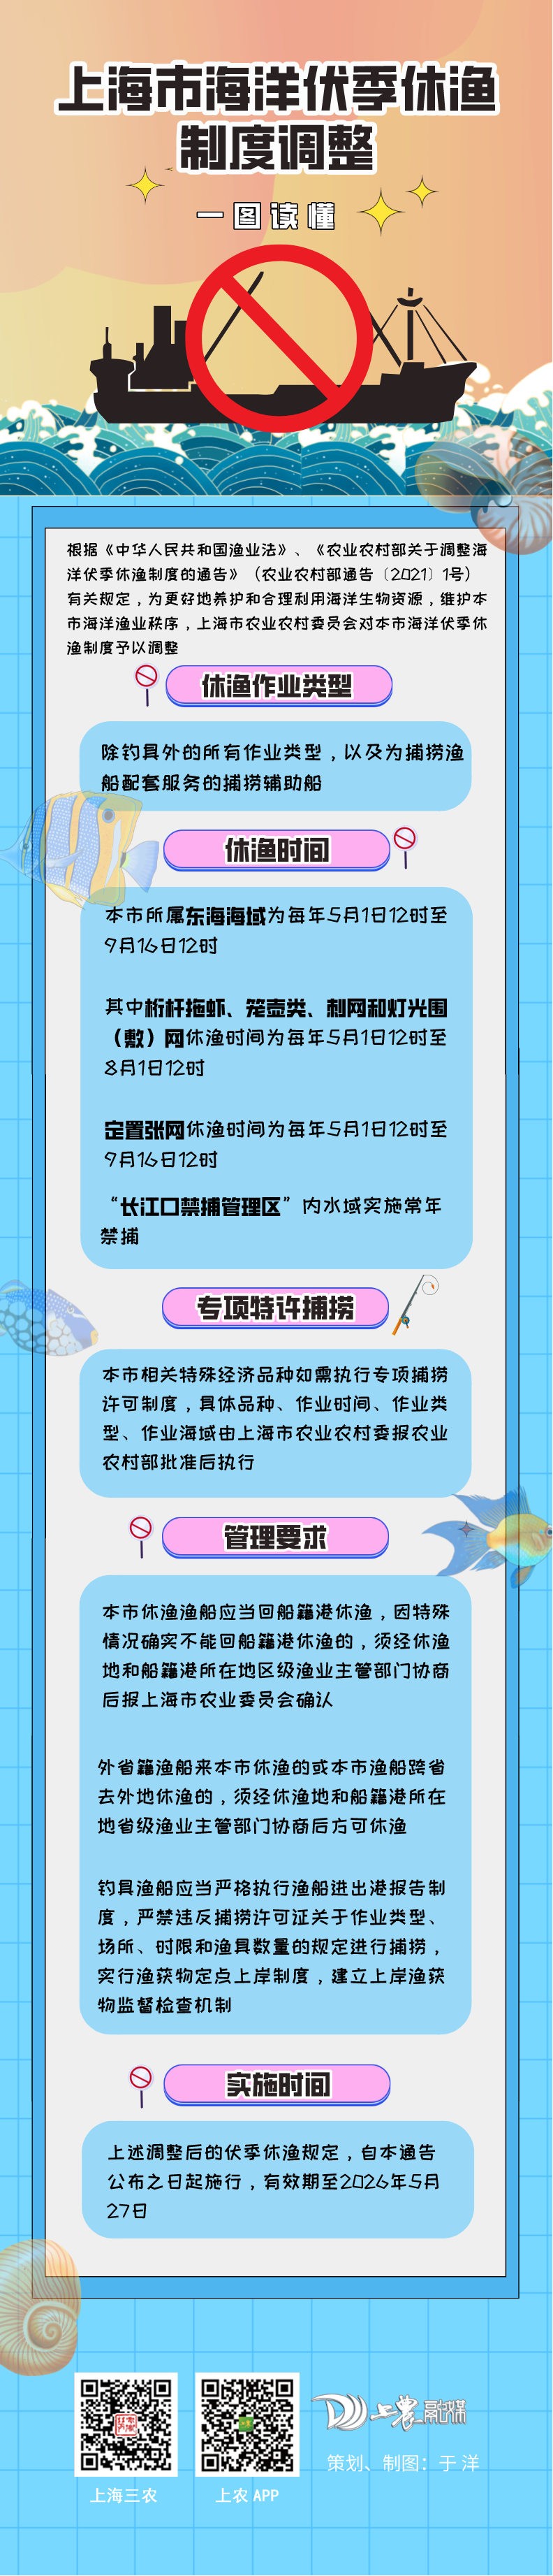 上海市海洋伏季休渔制度调整.png